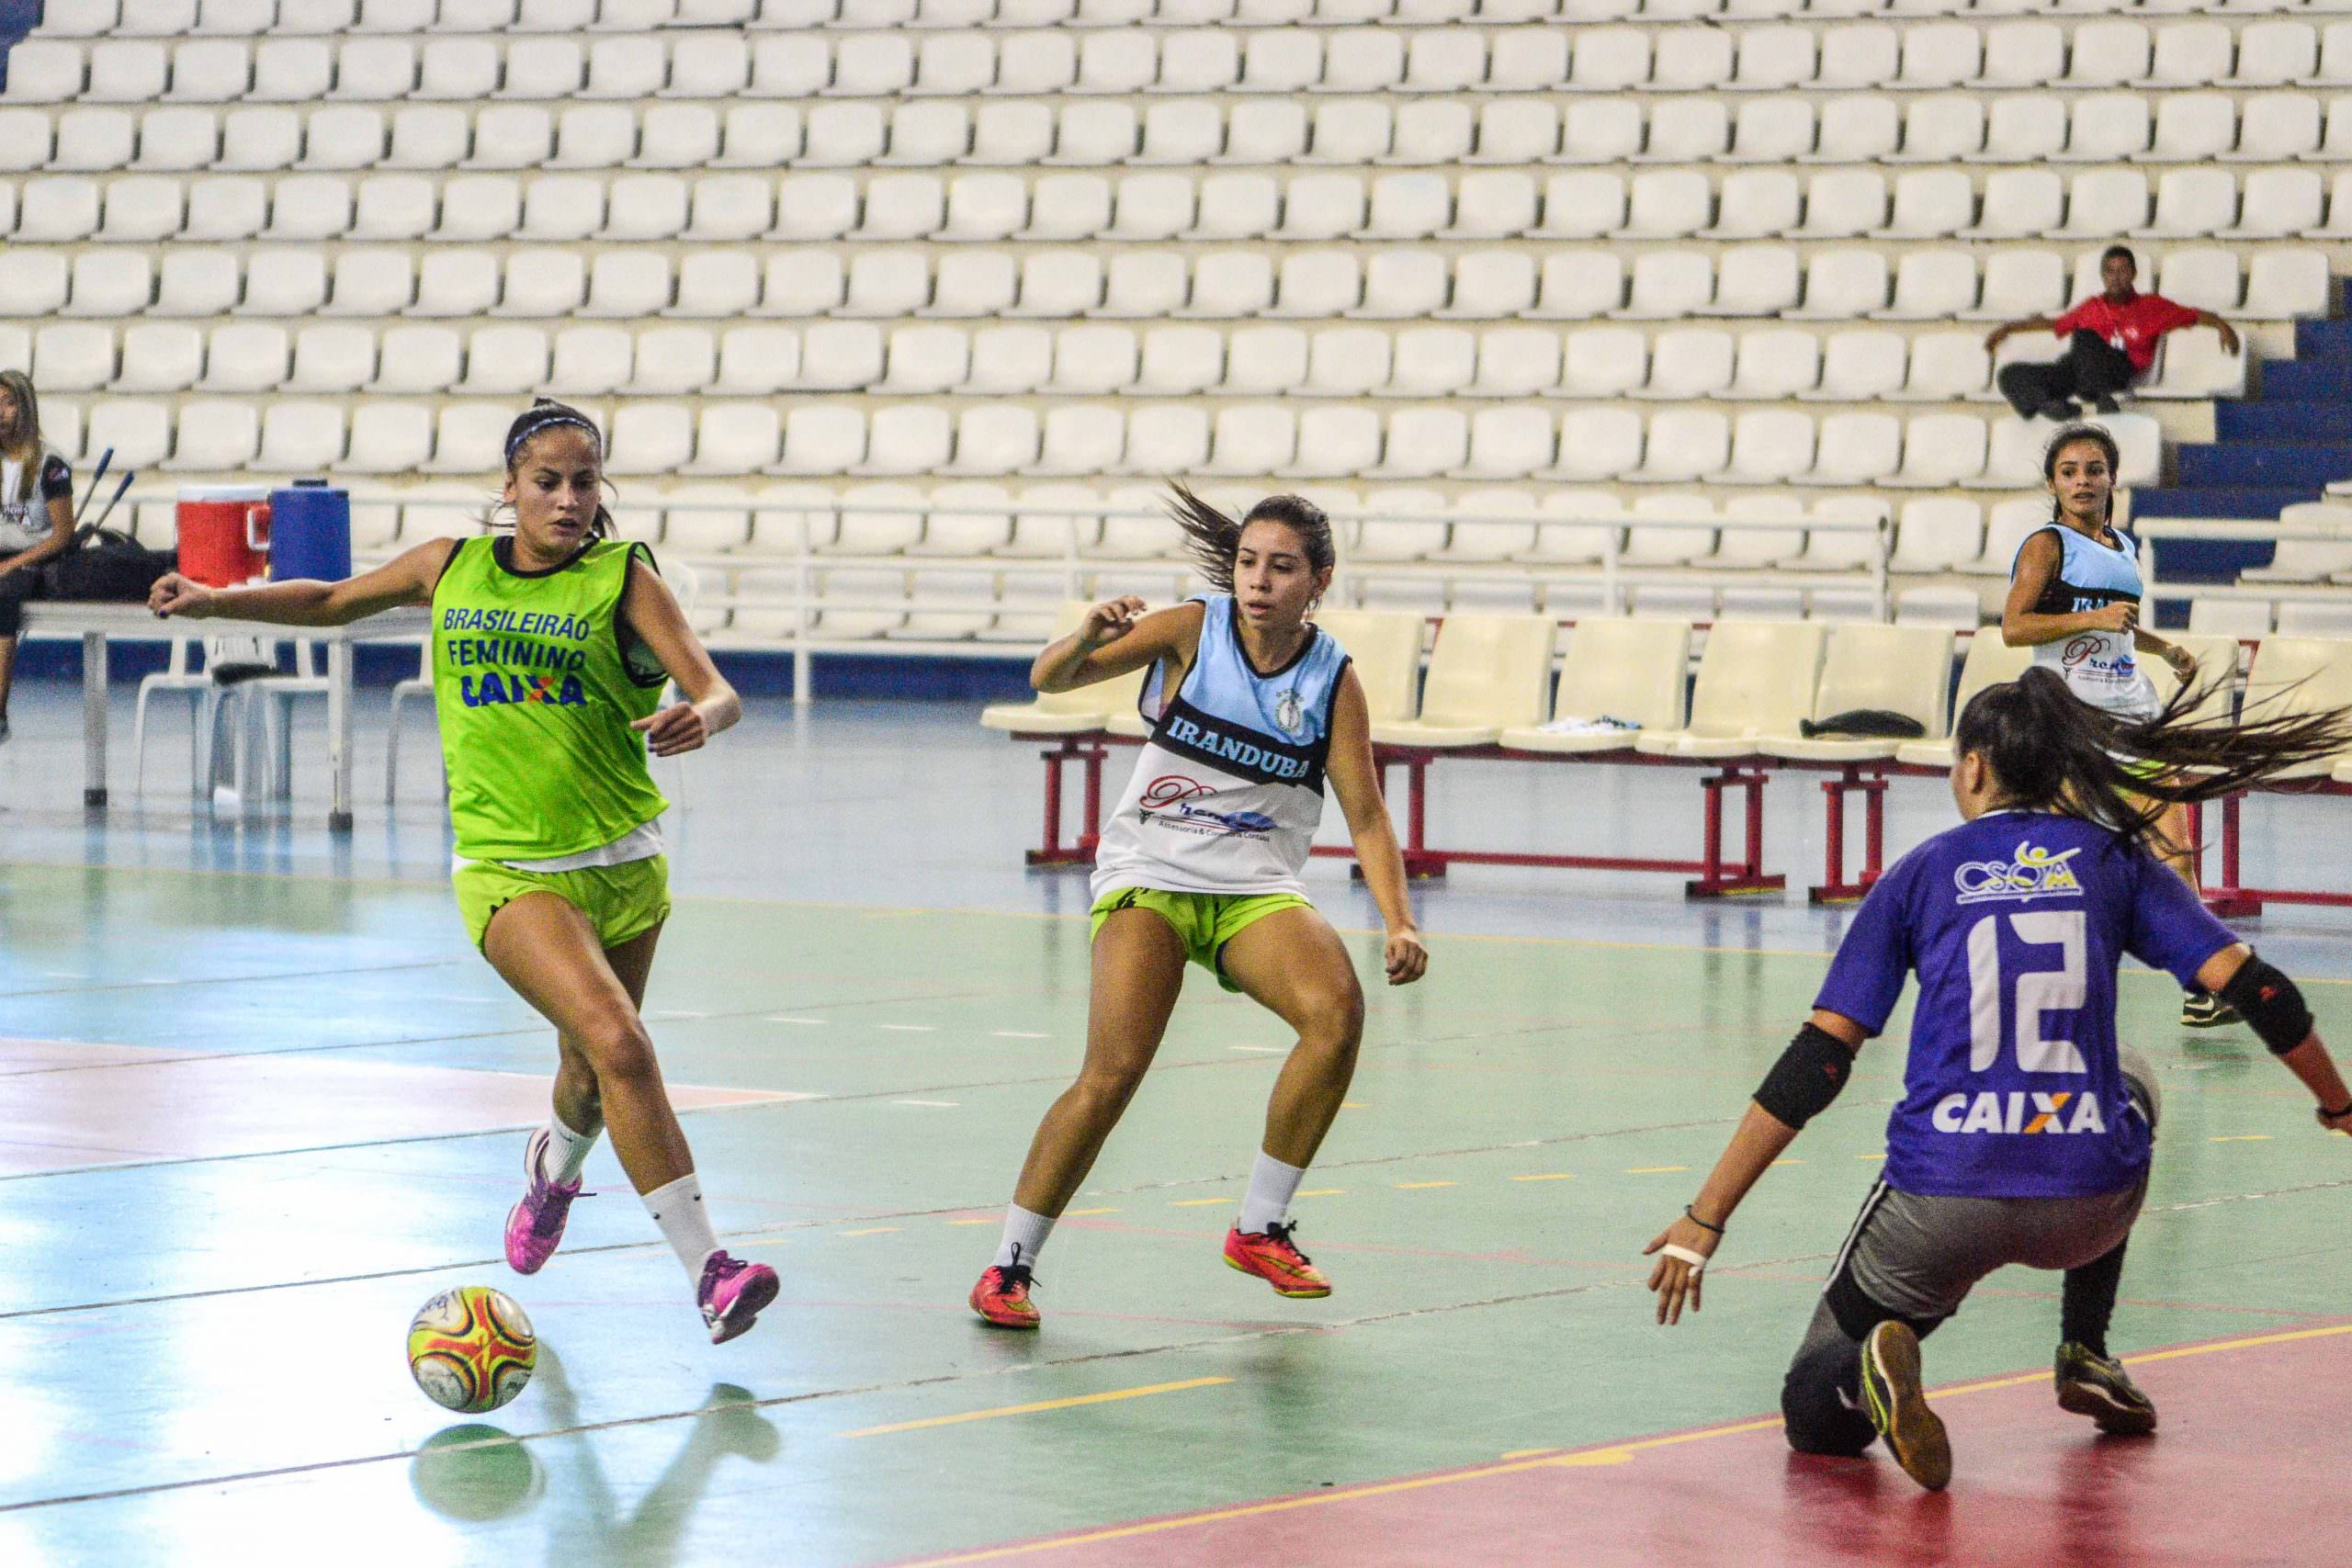 Iranduba realiza treino antes da final do Campeonato de Futsal Feminino